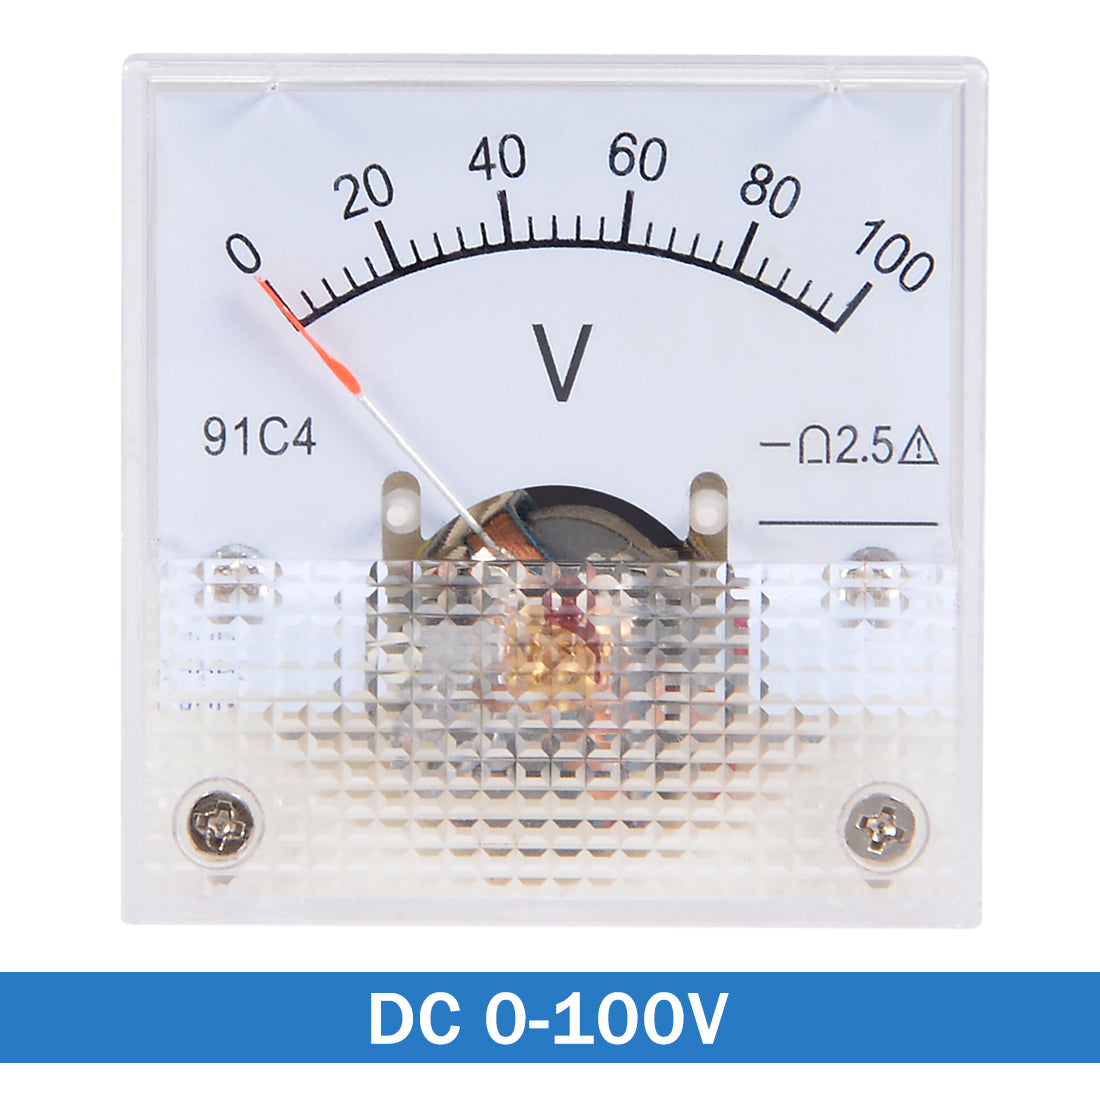 uxcell Uxcell DC 0-100V Analog Panel Voltage Gauge Volt Meter 91C4 2.5% Error